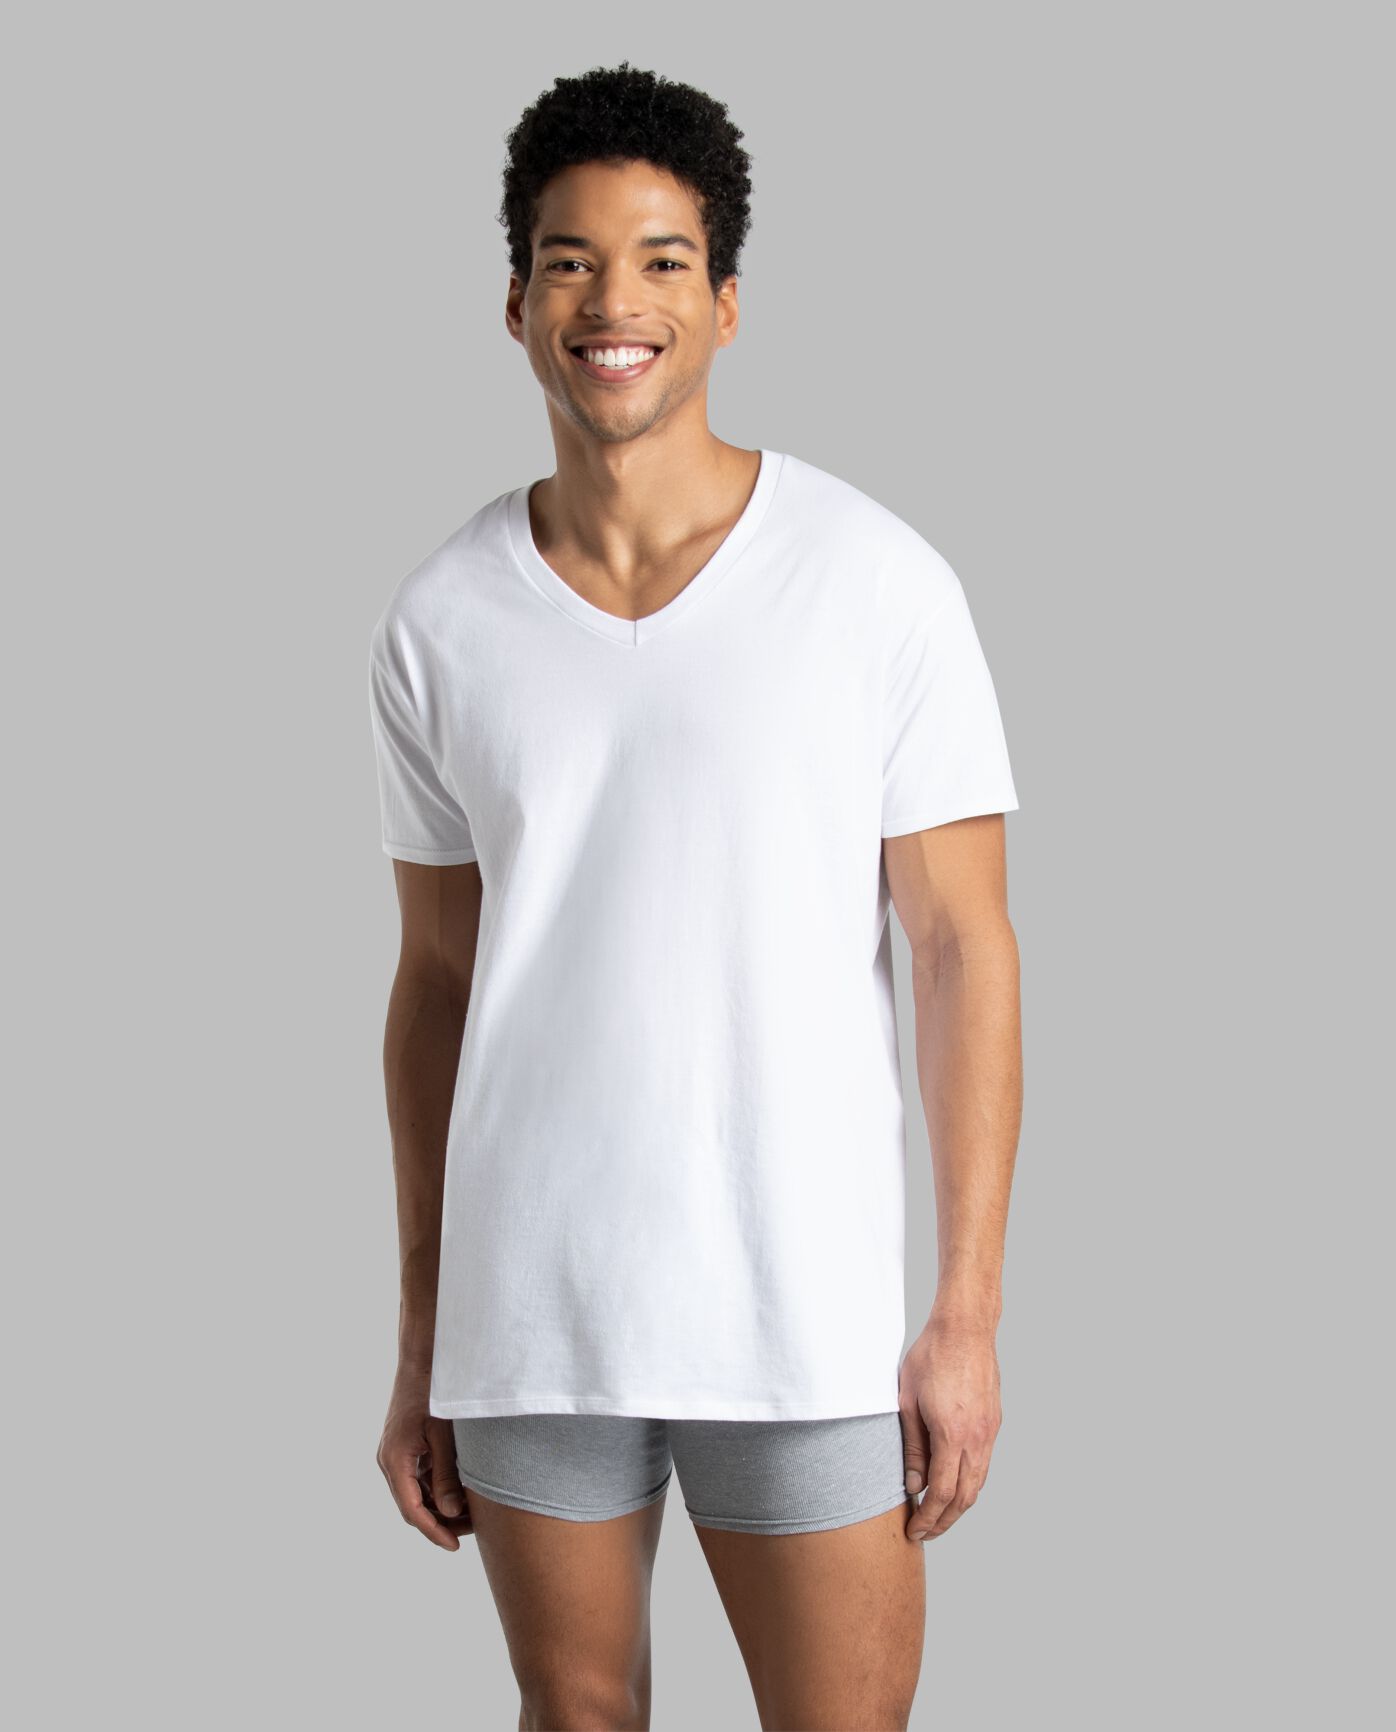 Men's Sleeve White V-Neck T-Shirts | Fruit of Loom